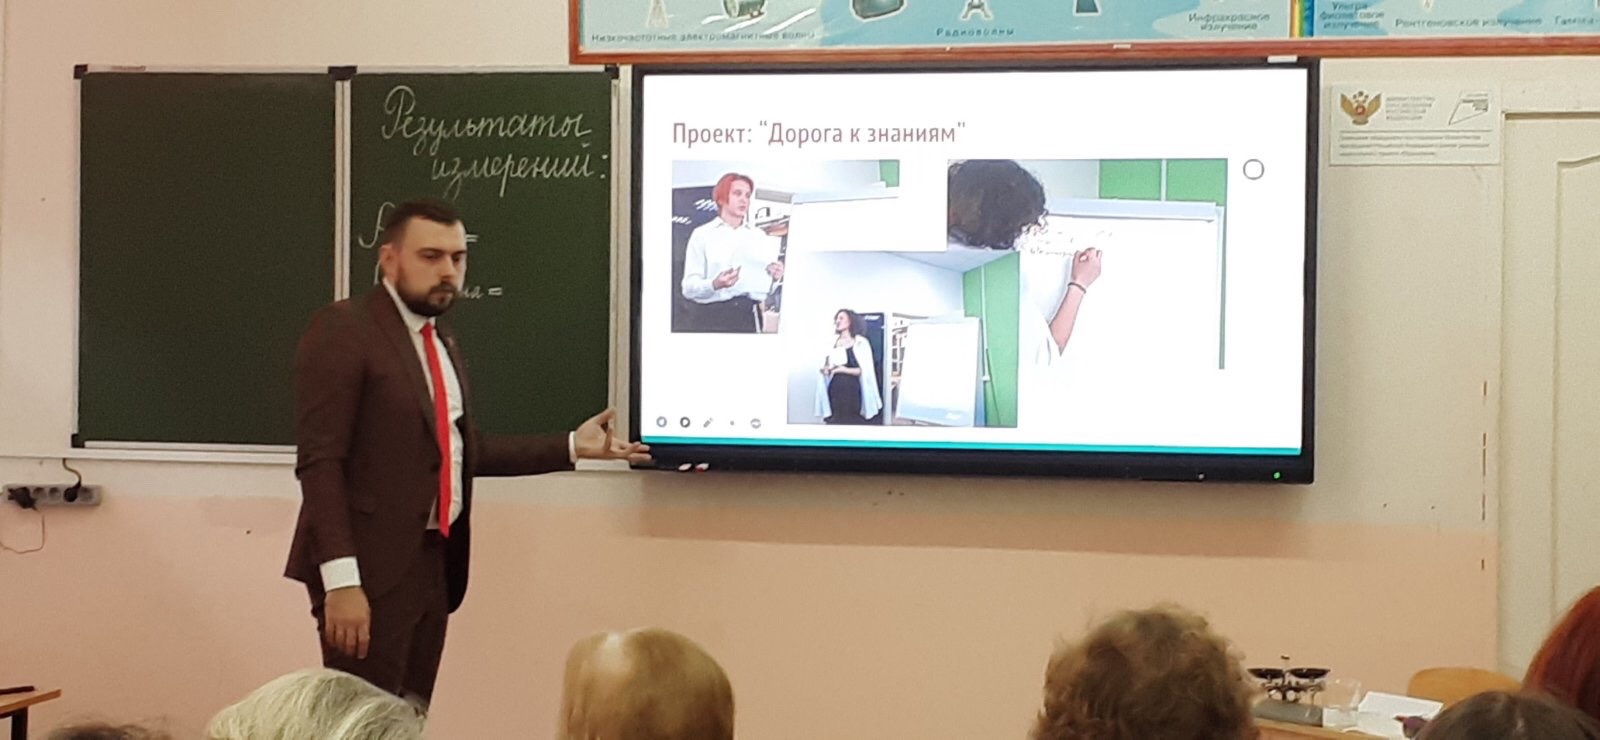 Наш педагог представил школу на региональном семинаре!.